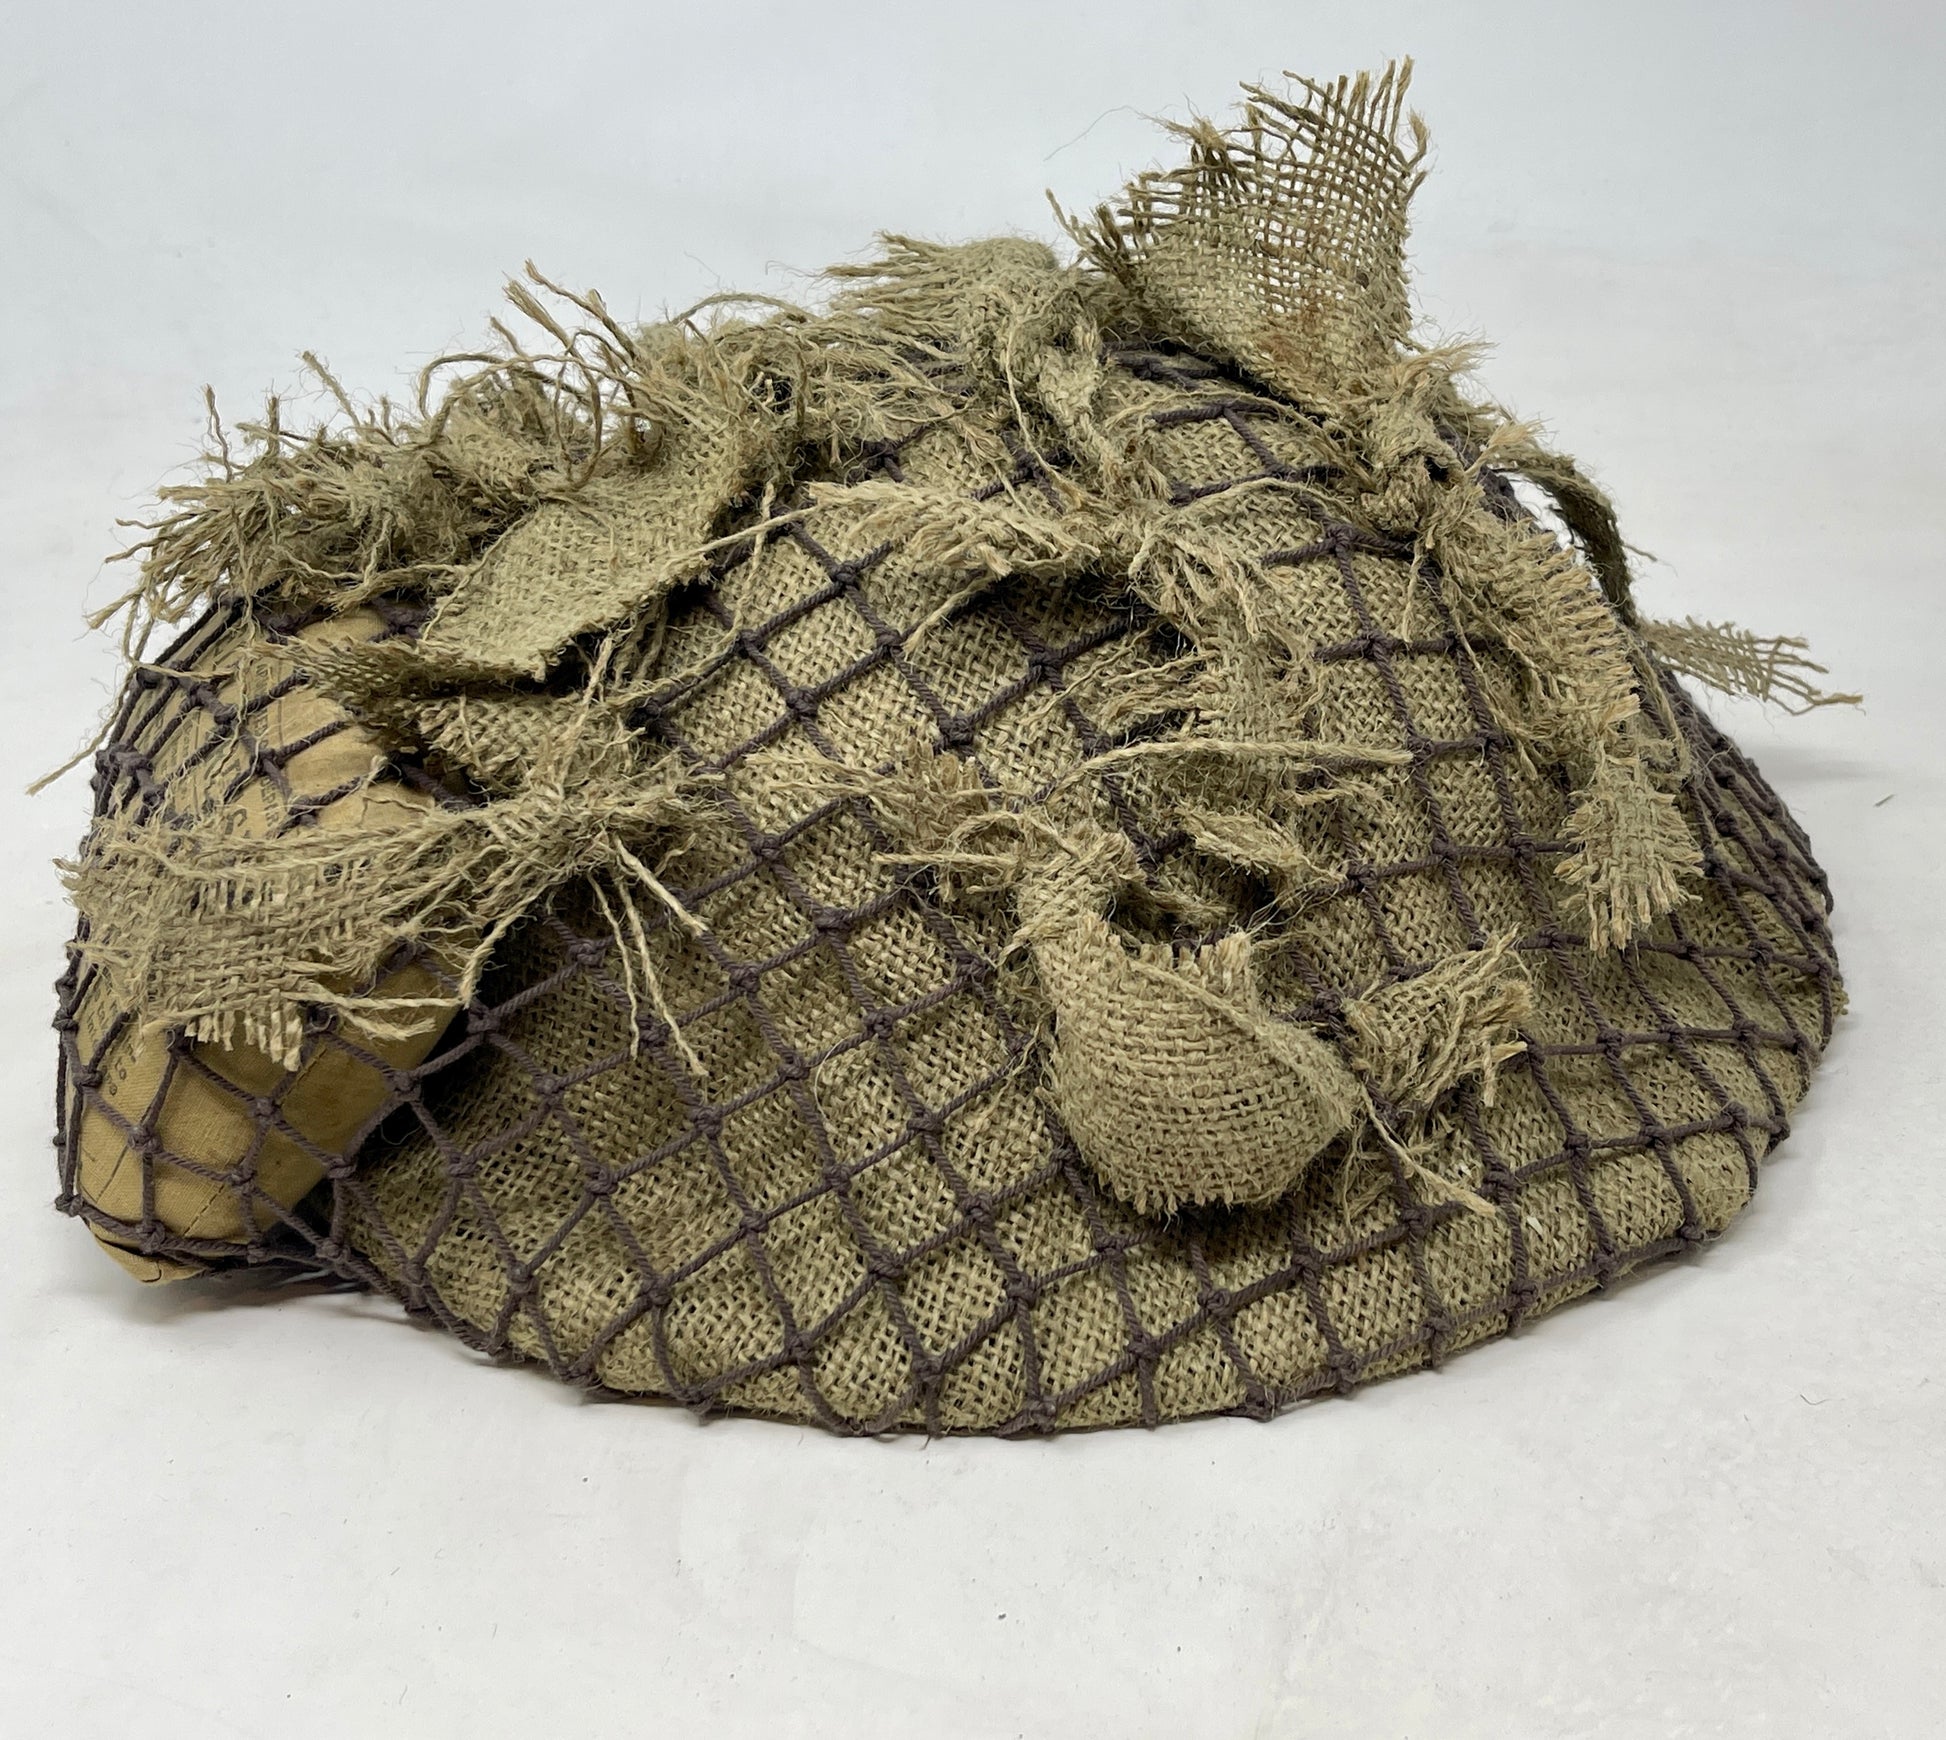 British Army WW2 Helmet with Net,